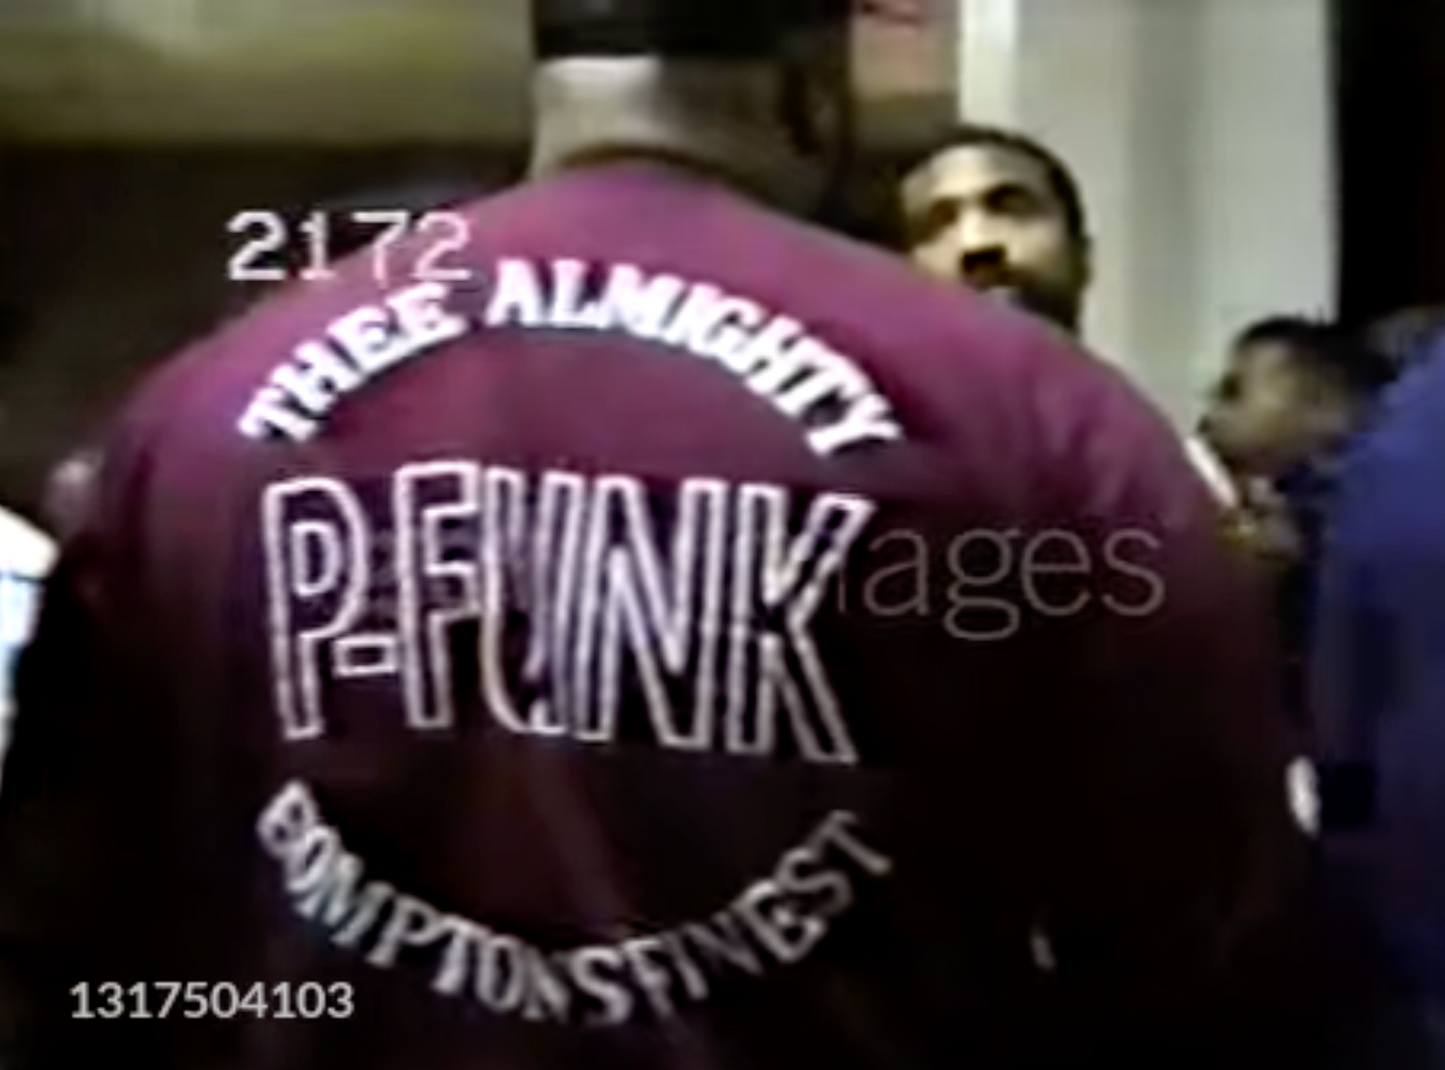 Almighty P-Funk Sweatshirt